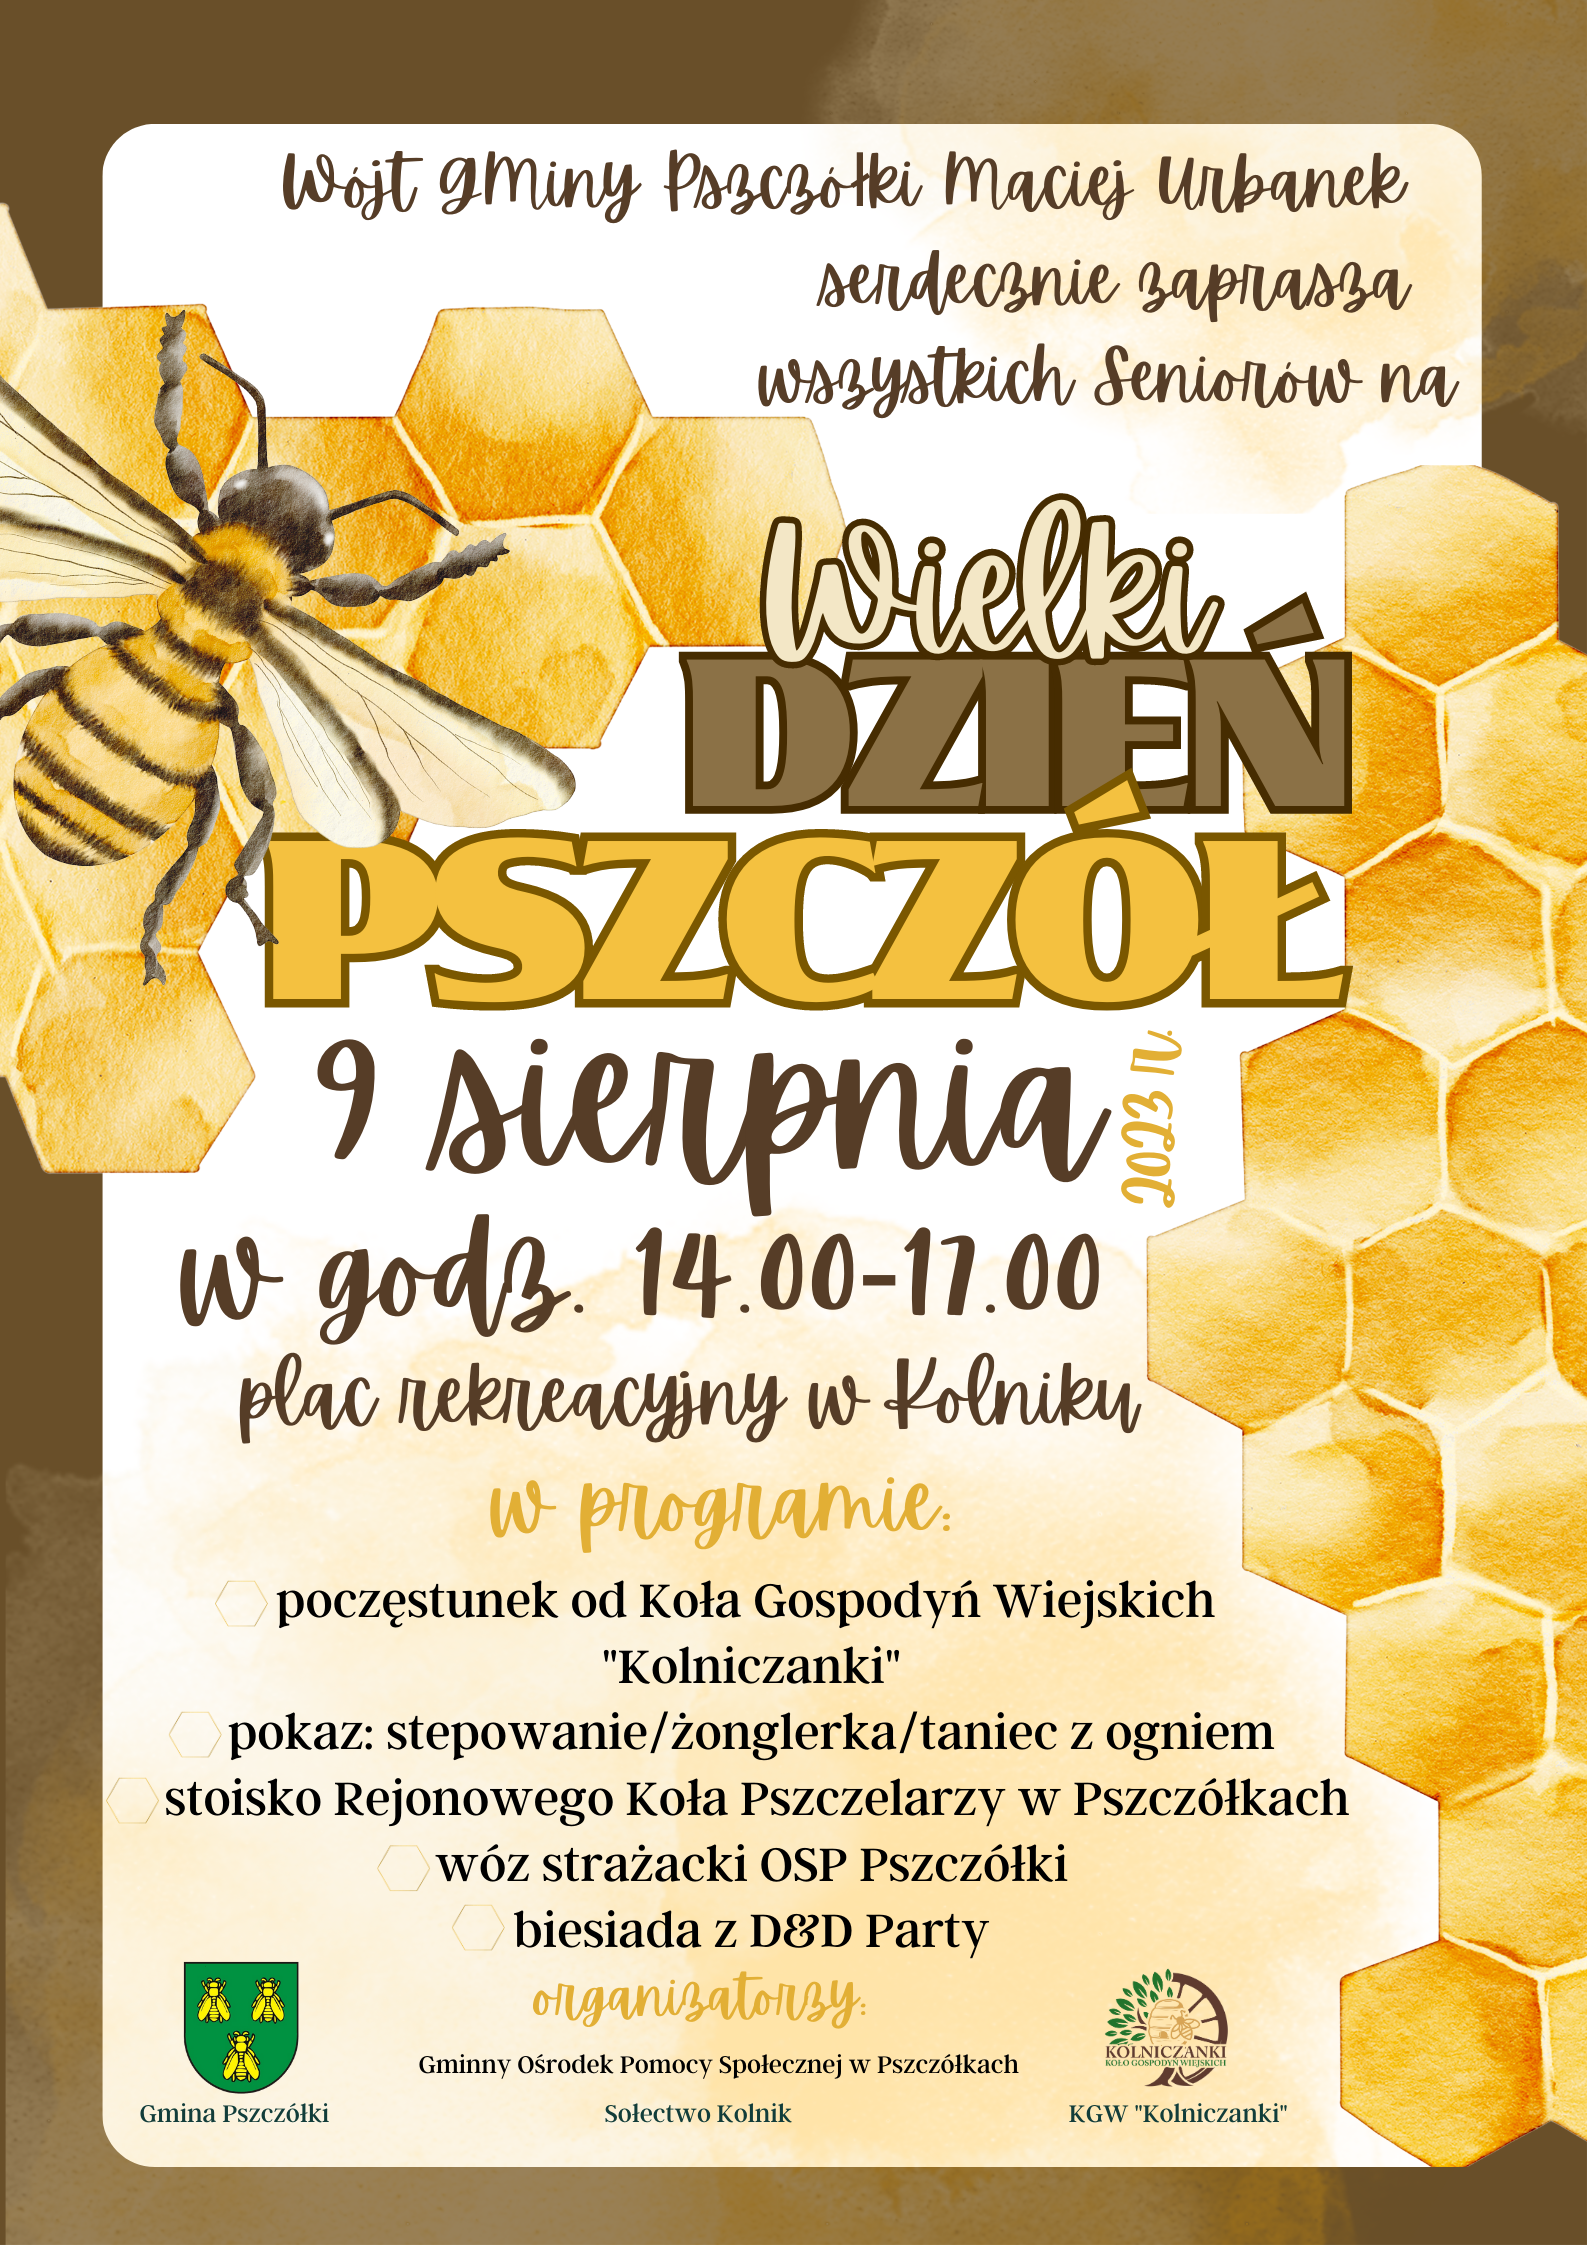 Wielki_dzień_pszczol